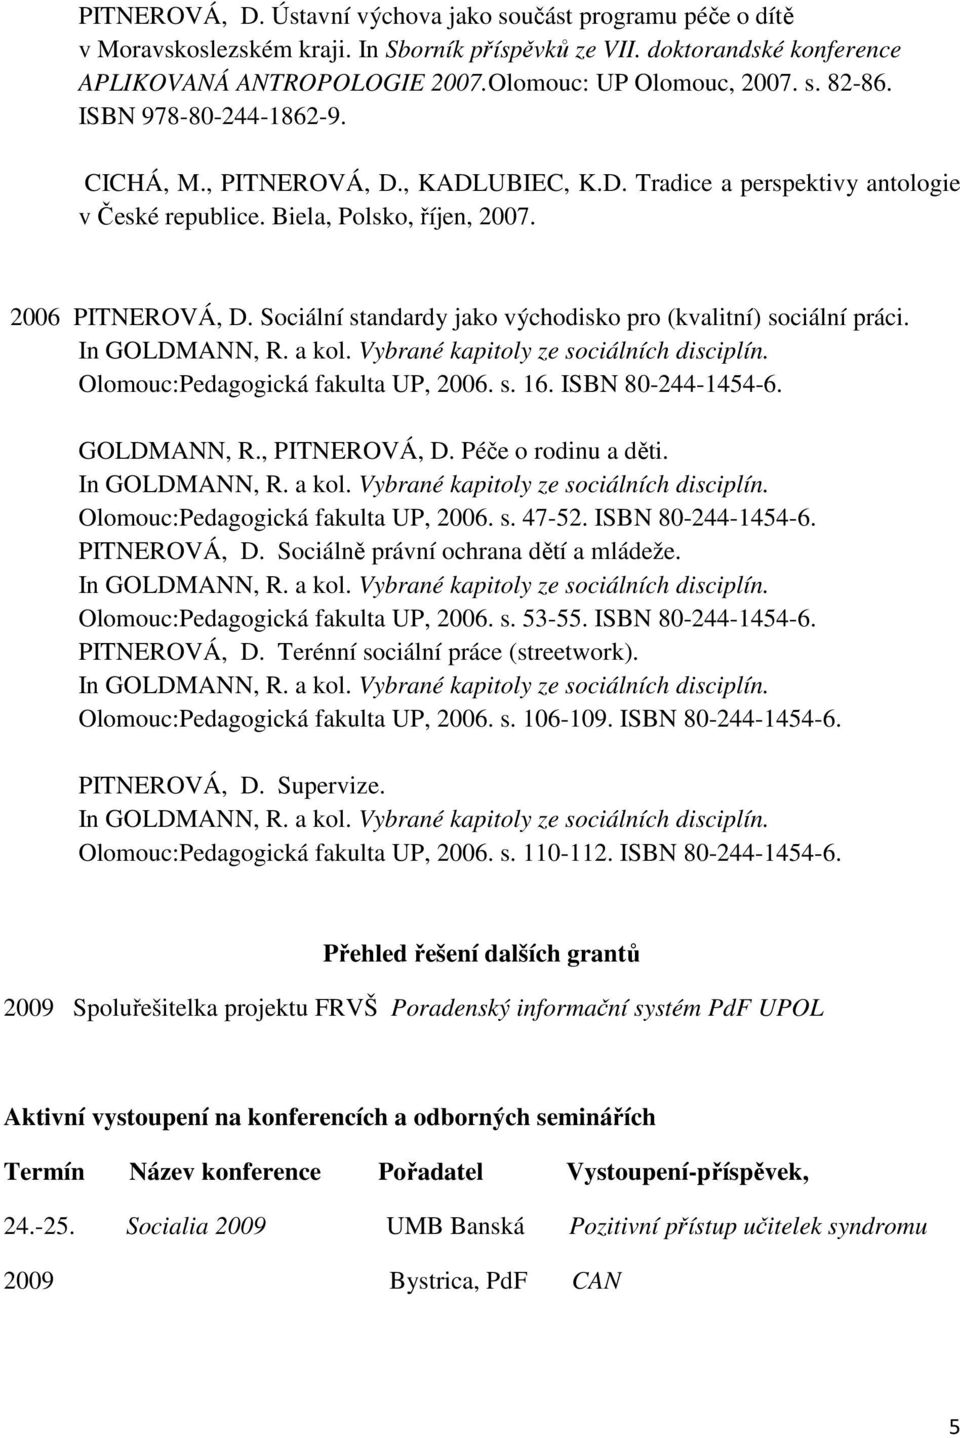 Sociální standardy jako východisko pro (kvalitní) sociální práci. Olomouc:Pedagogická fakulta UP, 2006. s. 16. ISBN 80-244-1454-6. GOLDMANN, R., PITNEROVÁ, D. Péče o rodinu a děti.